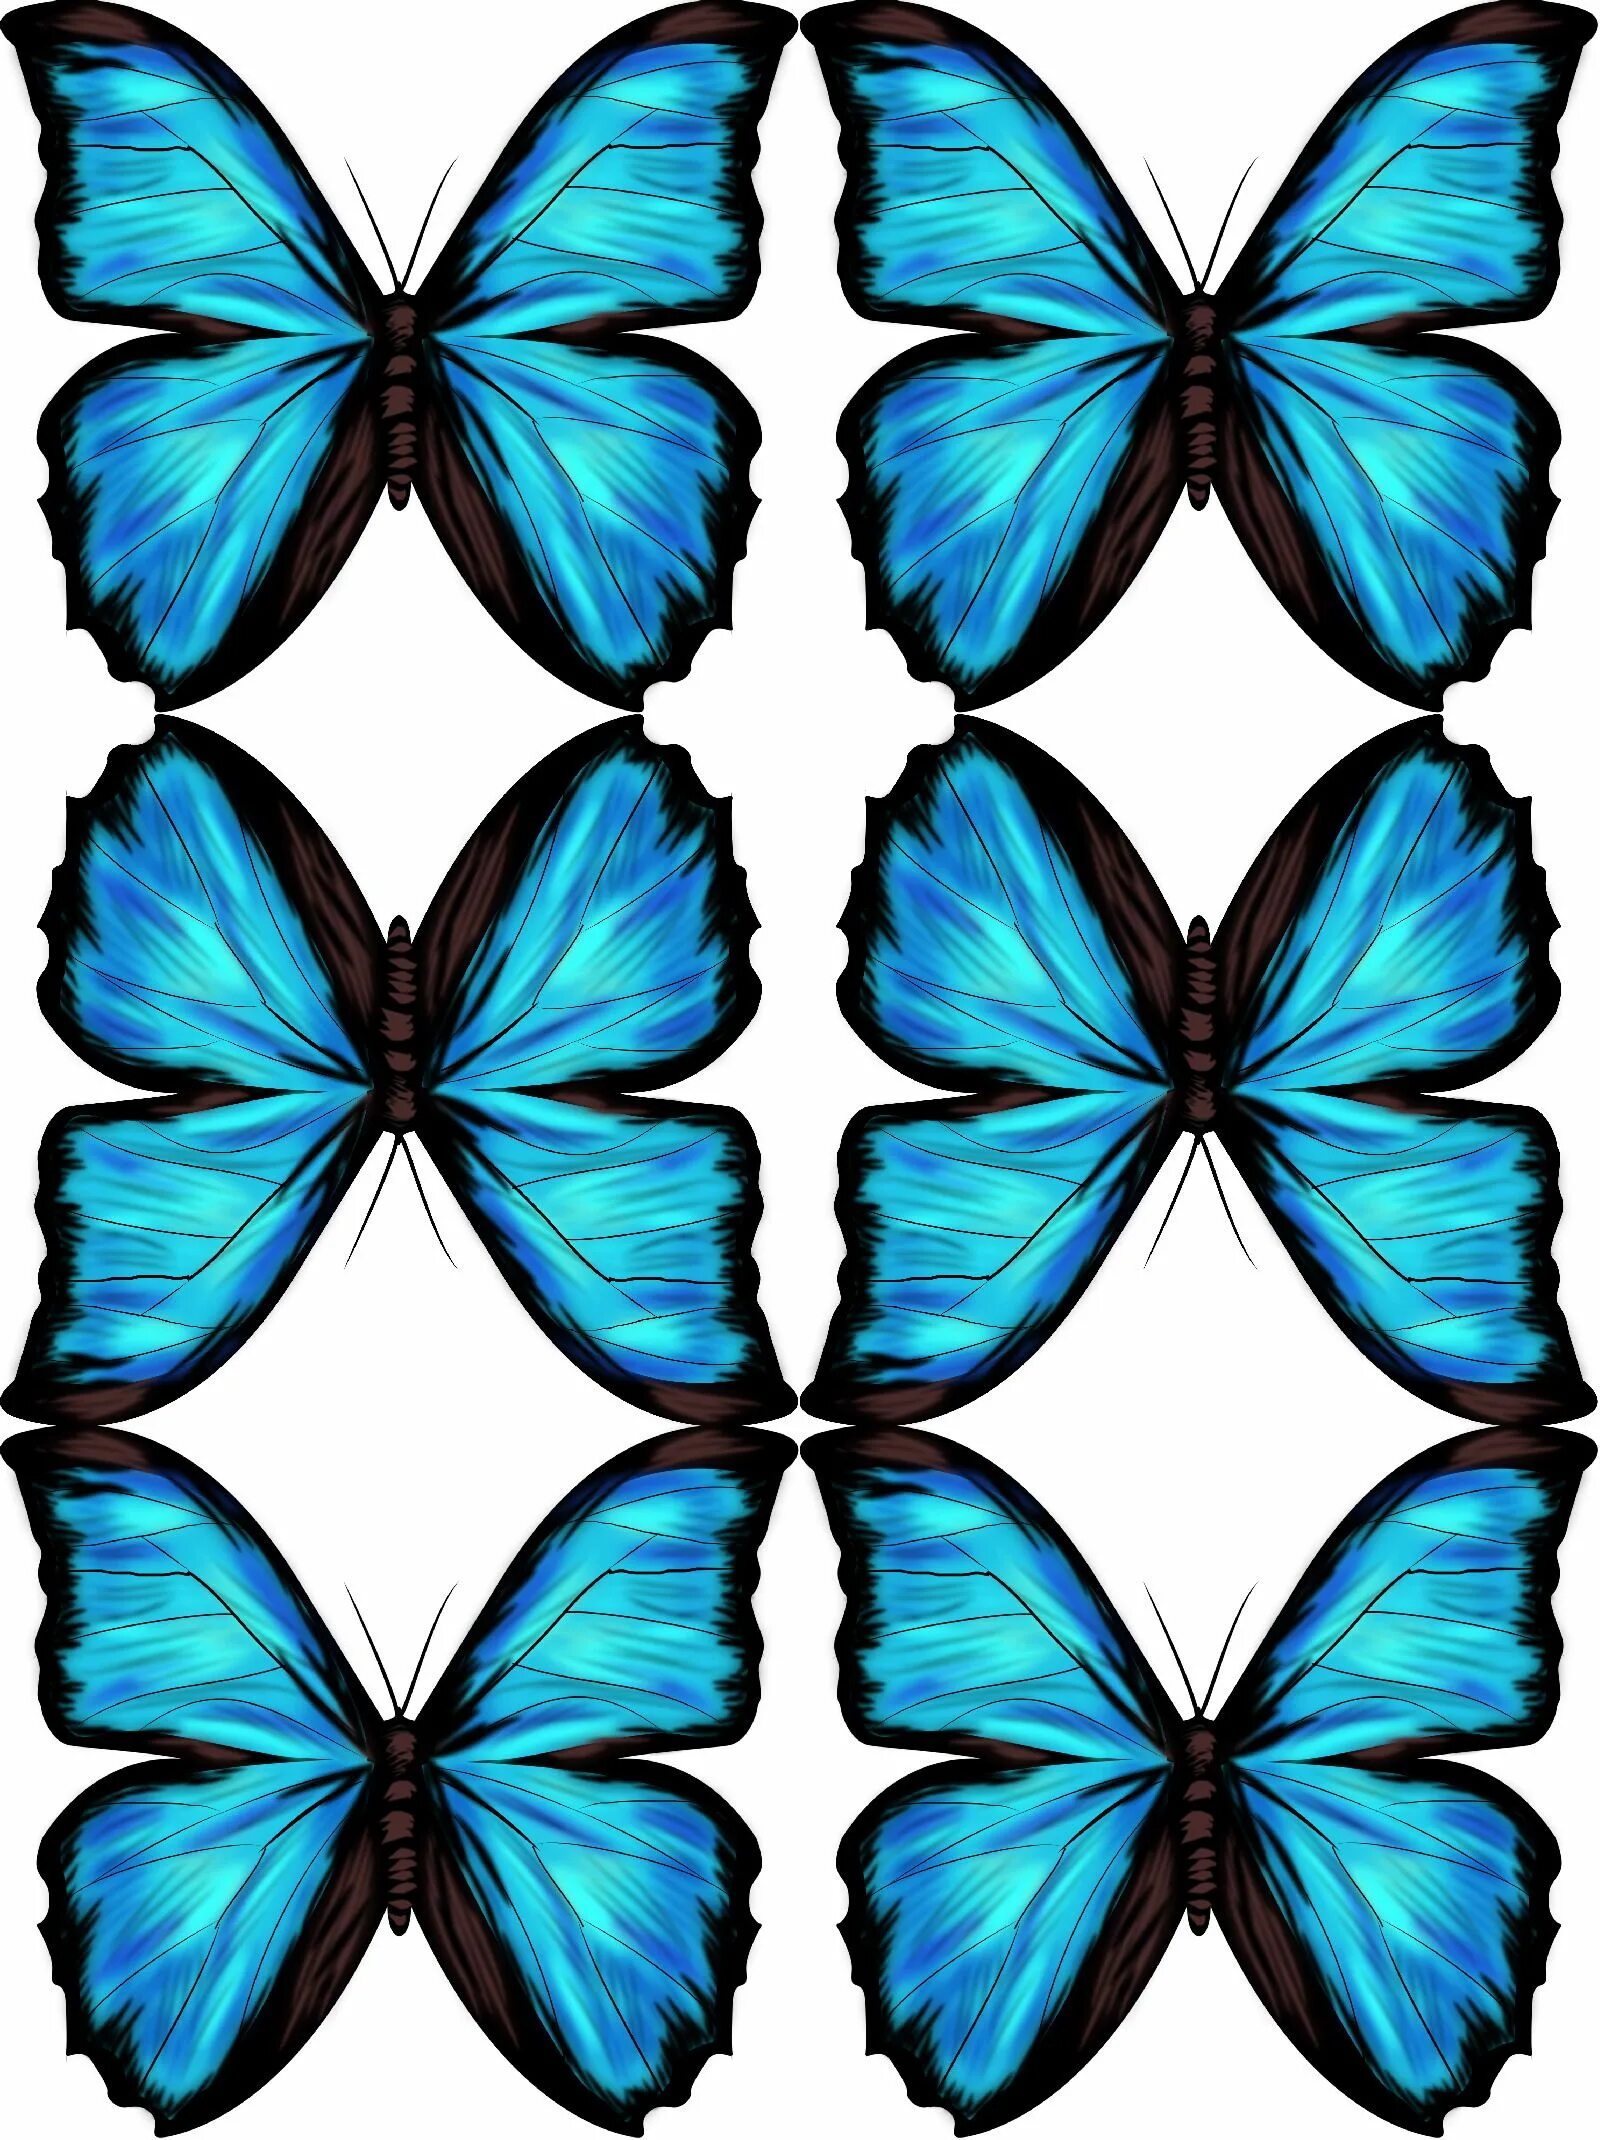 Синие картинки распечатать. Синяя бабочка. Бабочки для печати. Бабочки синие фотопечать. Бабочки бирюзовые для печати.